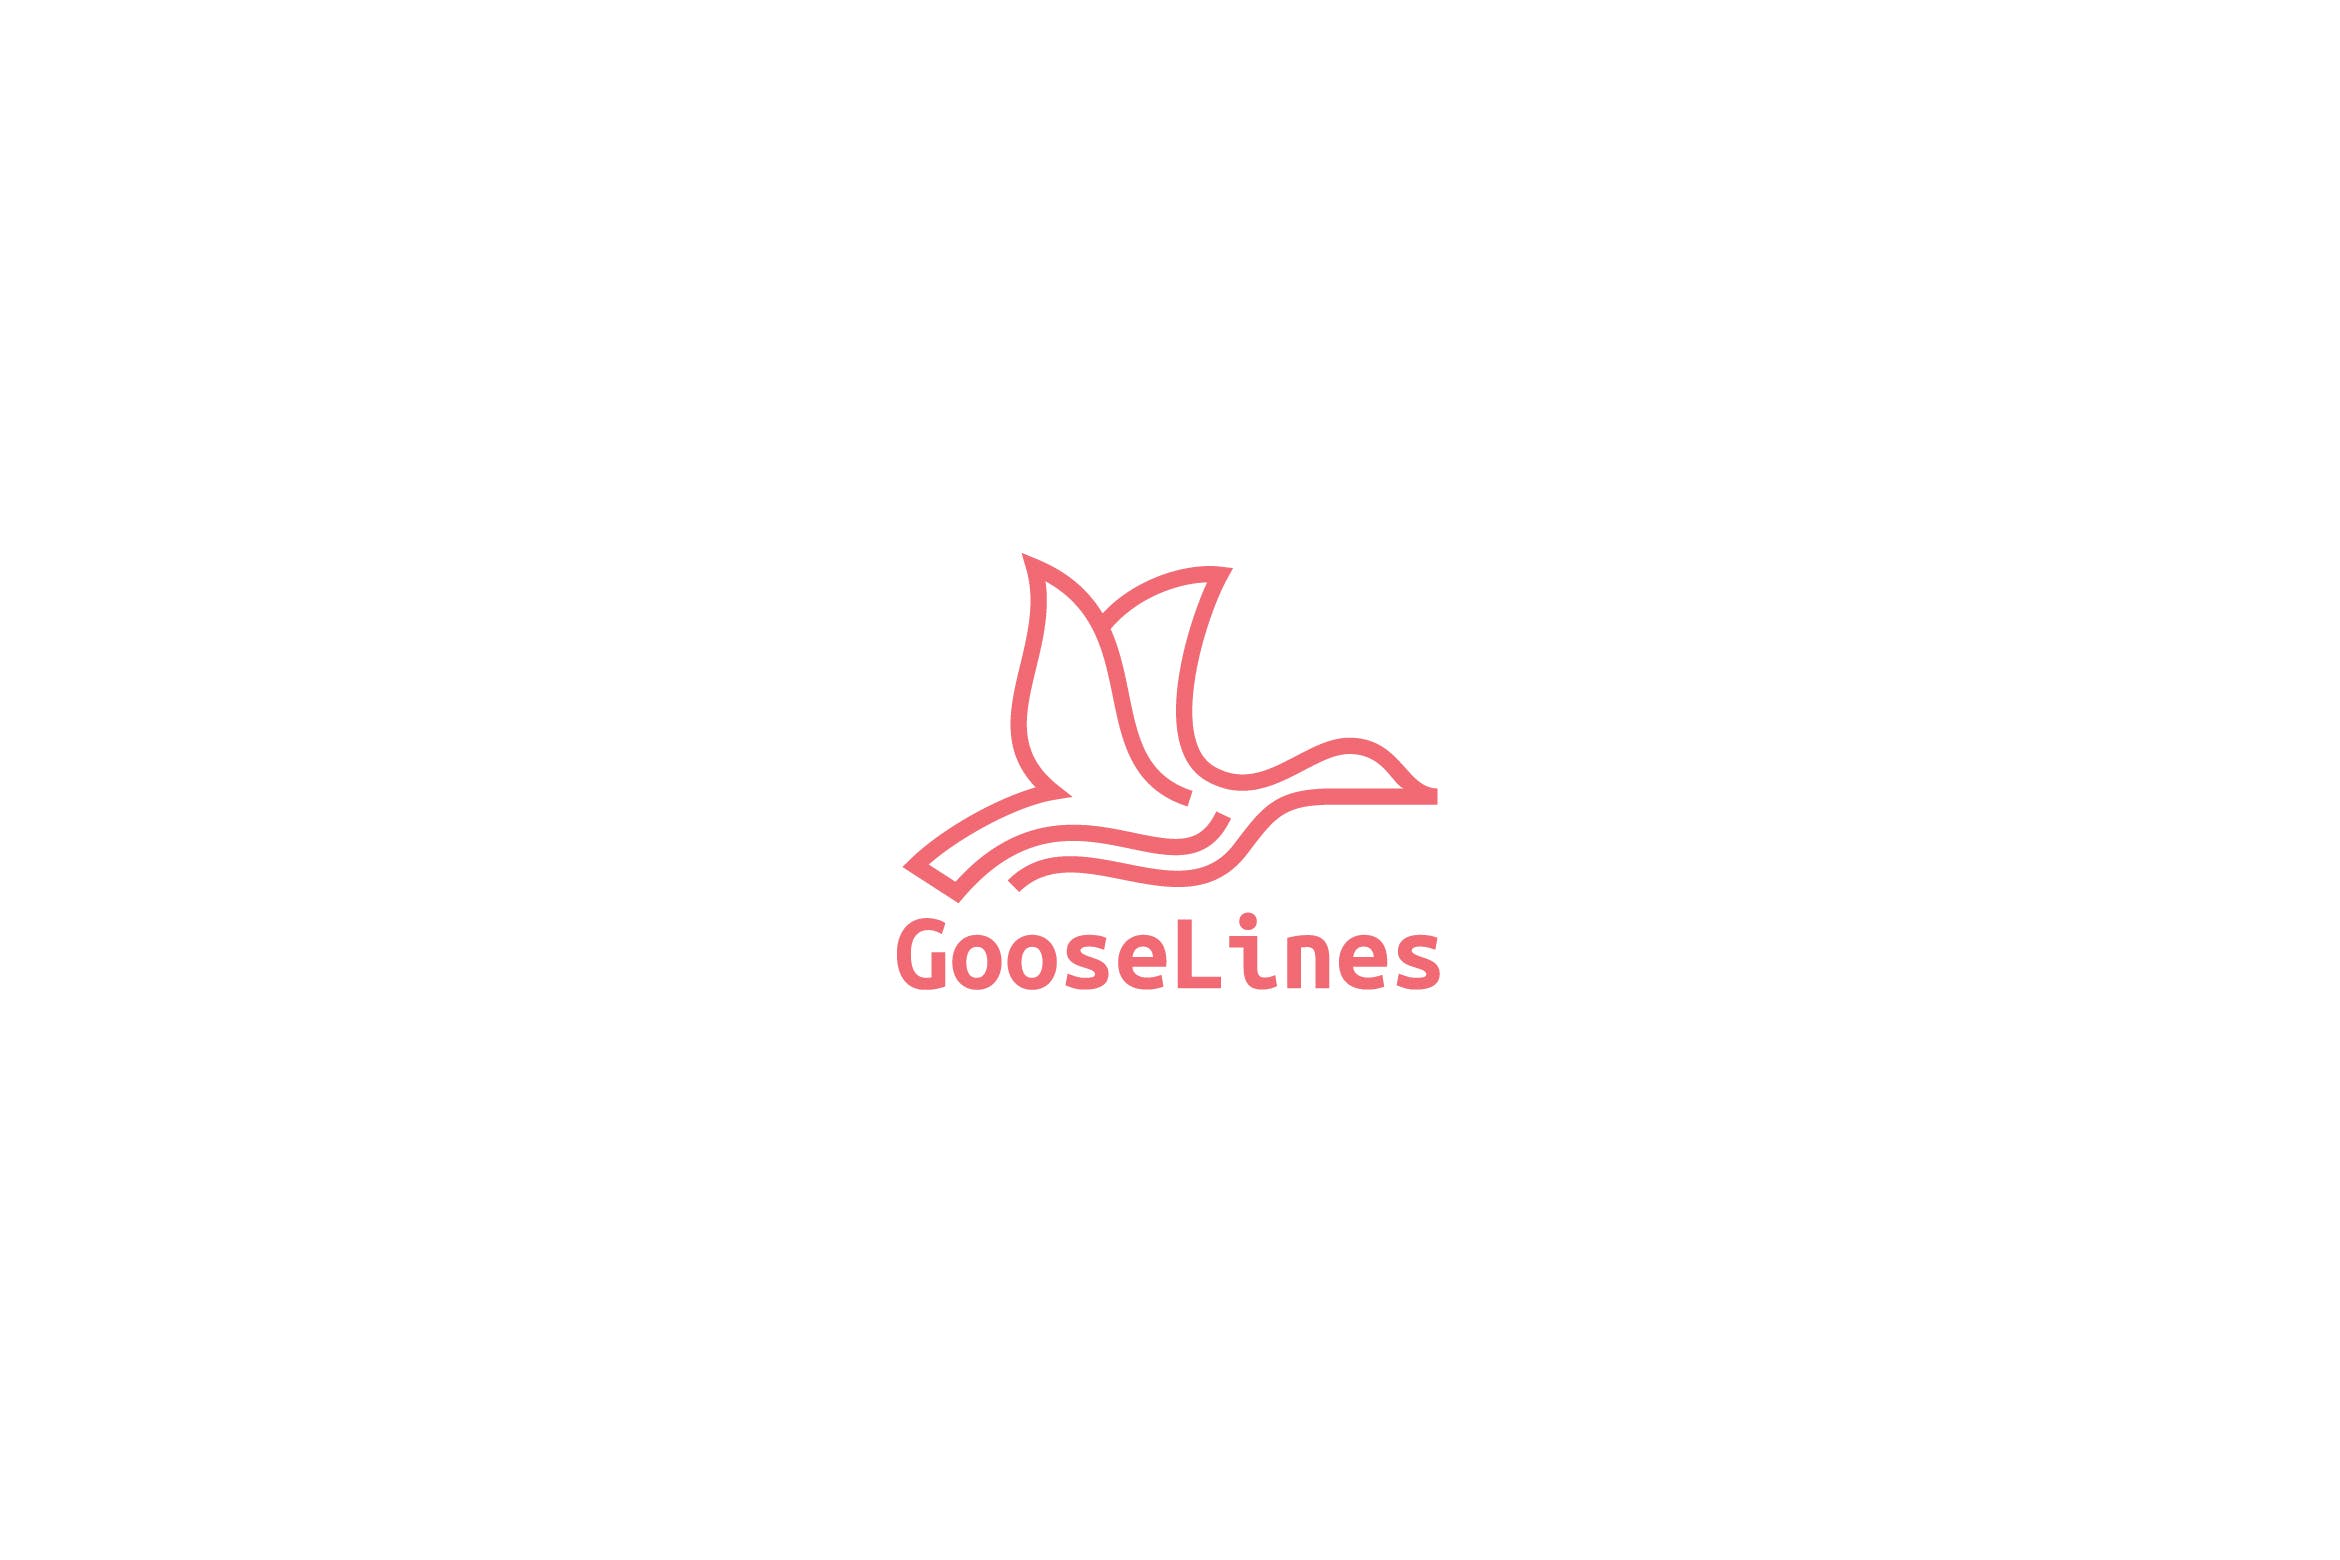 天鹅简笔画线条图形Logo设计非凡图库精选模板 Goose Lines Logo插图